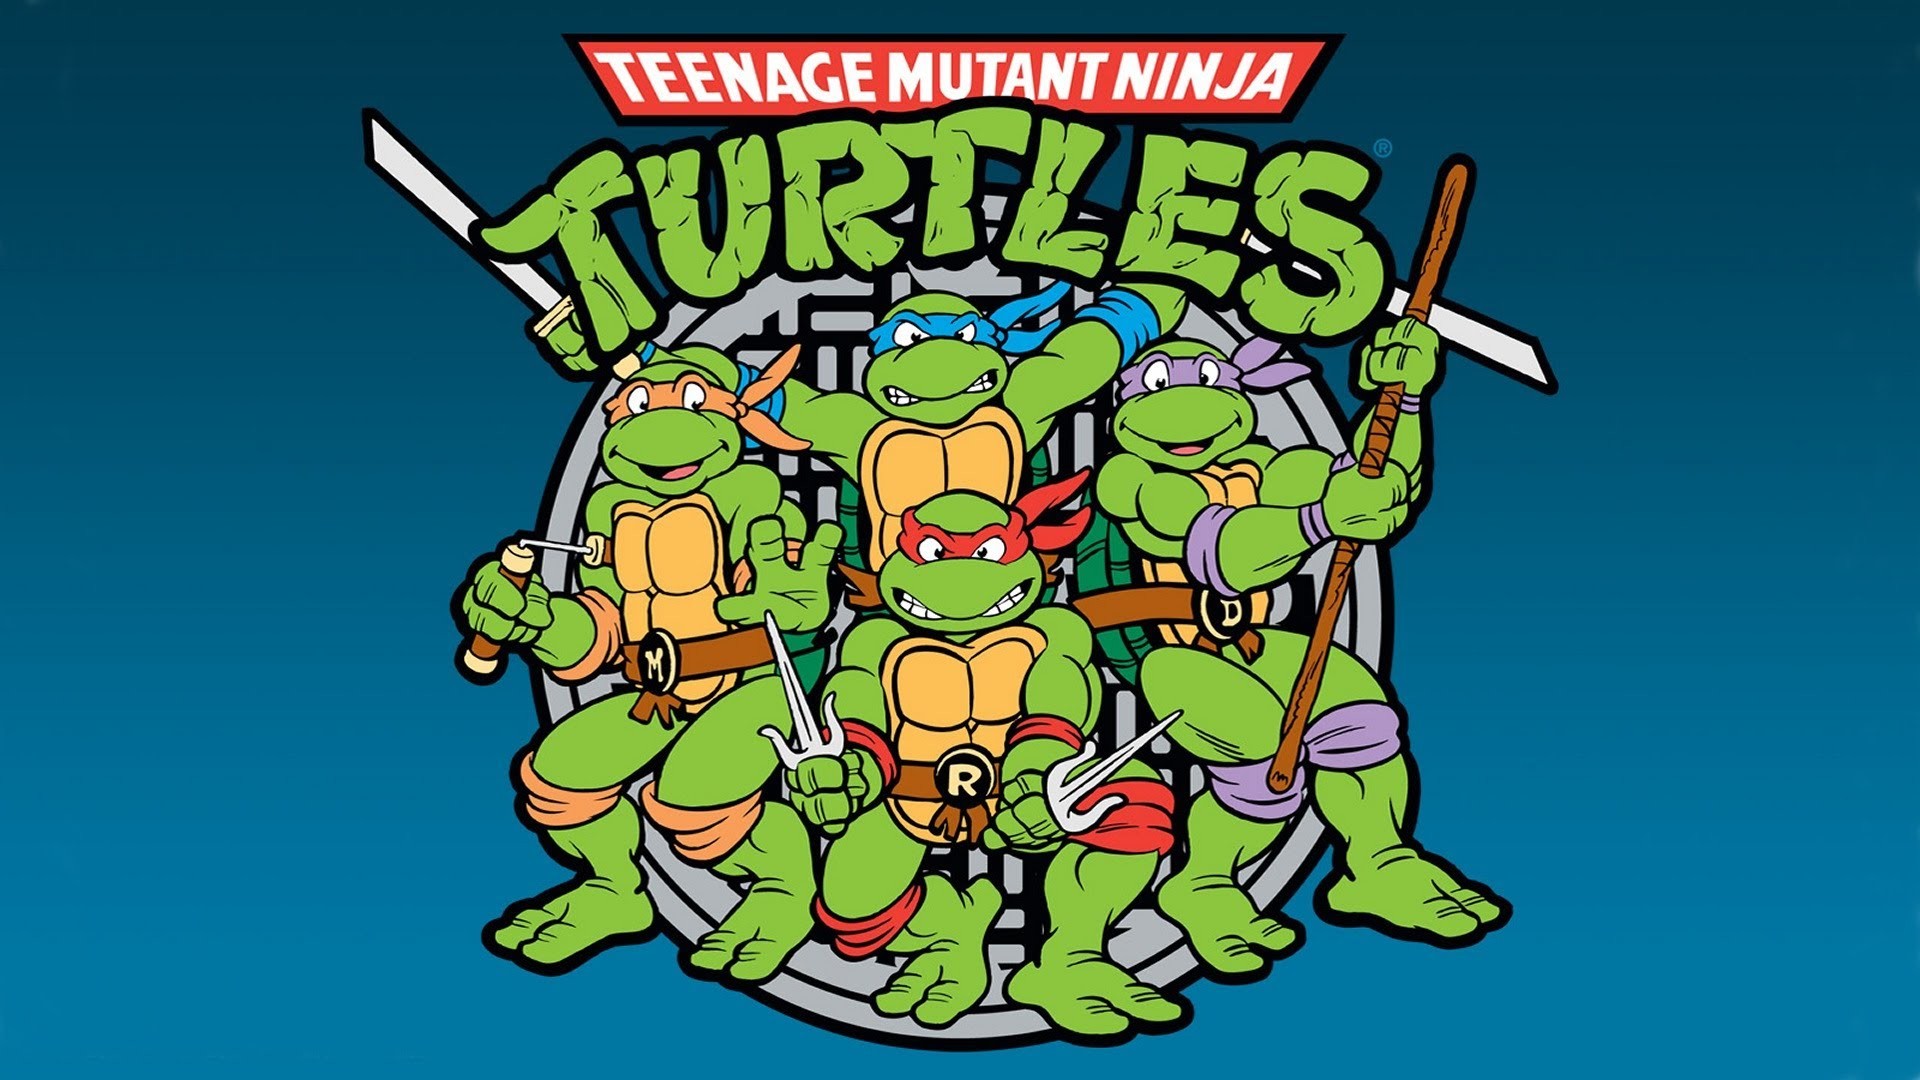 Rise of the Teenage Mutant Ninja Turtles  Teenage mutant ninja turtles  artwork Ninja turtles artwork Ninja turtles